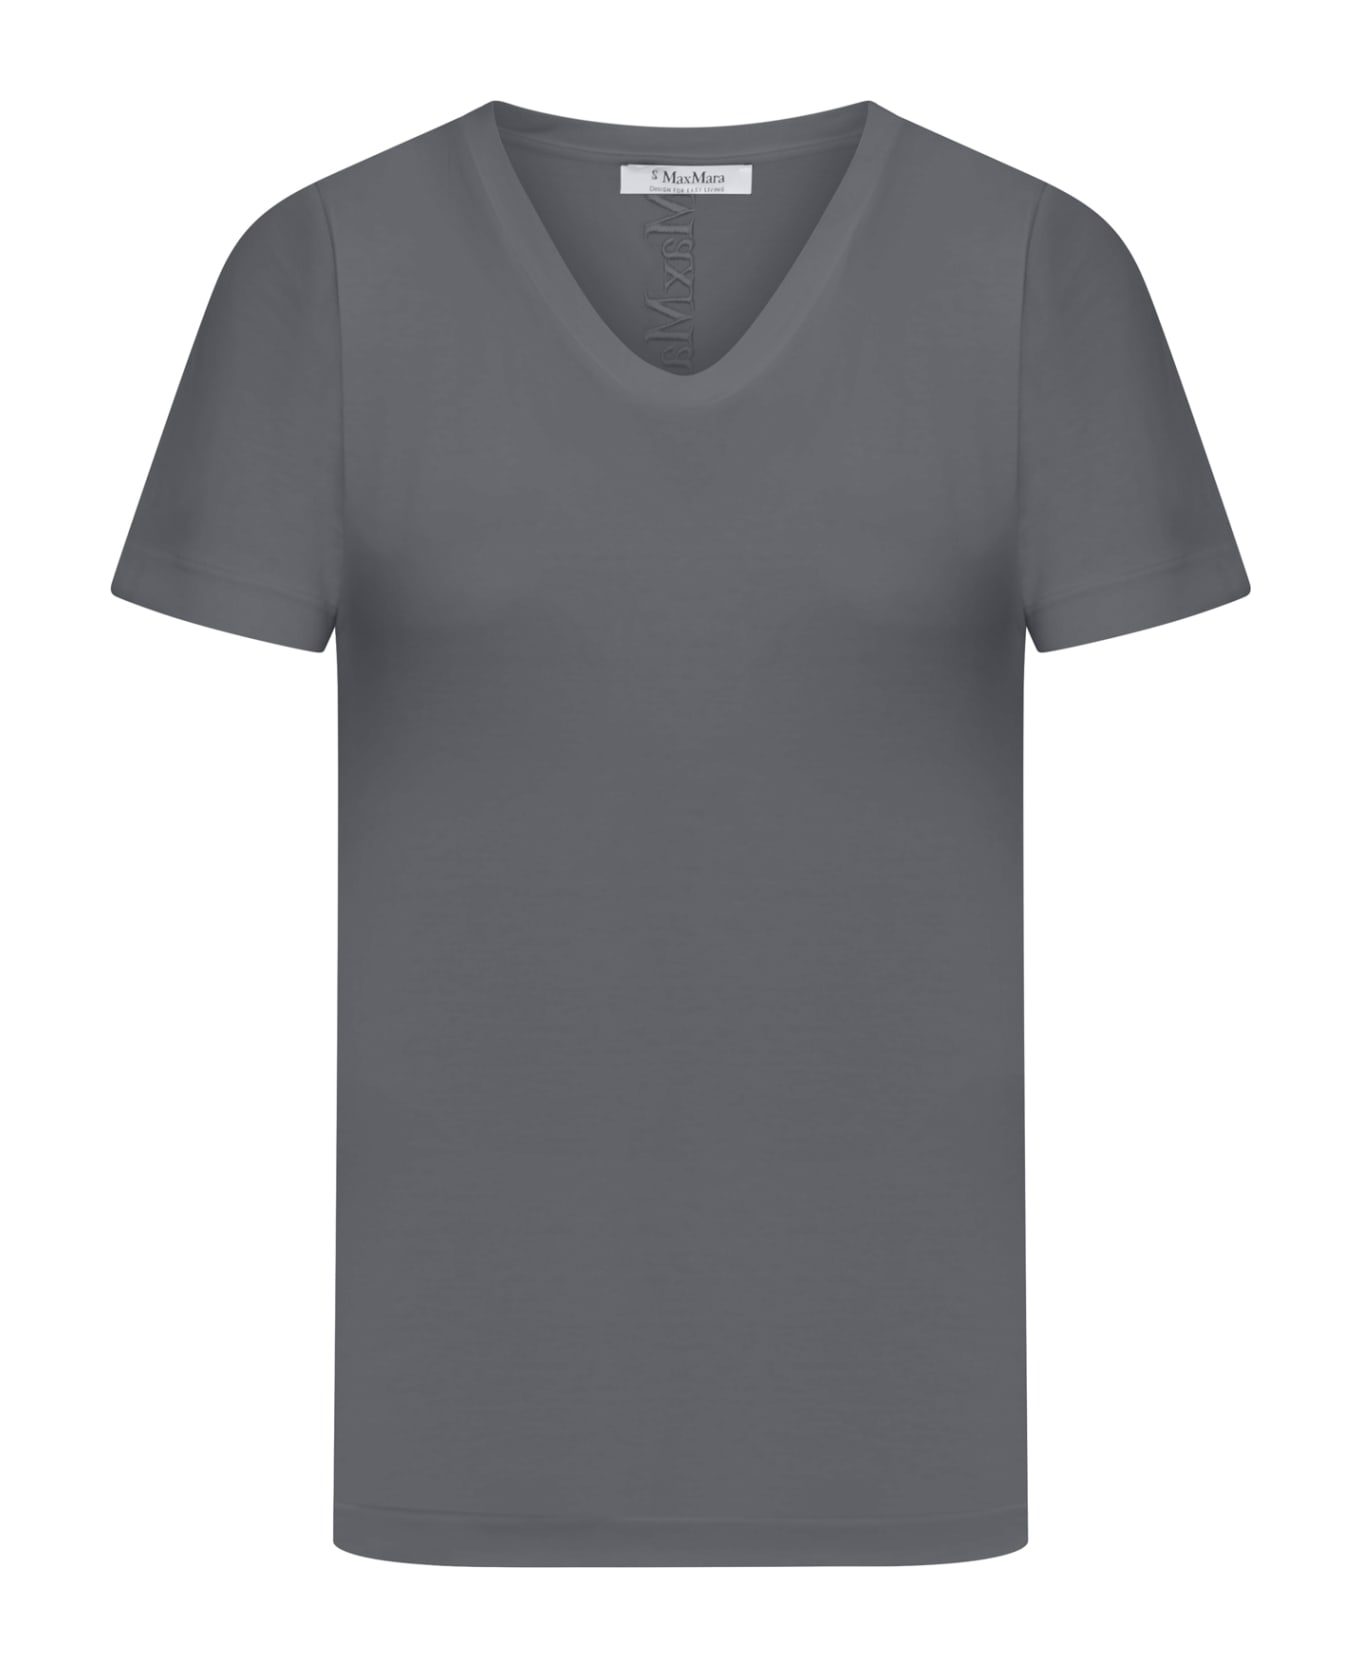 &#Chicago Bulls Mitchell & Ness Hardwood Classics T-Shirt Quito T-shirt - Dark Grey